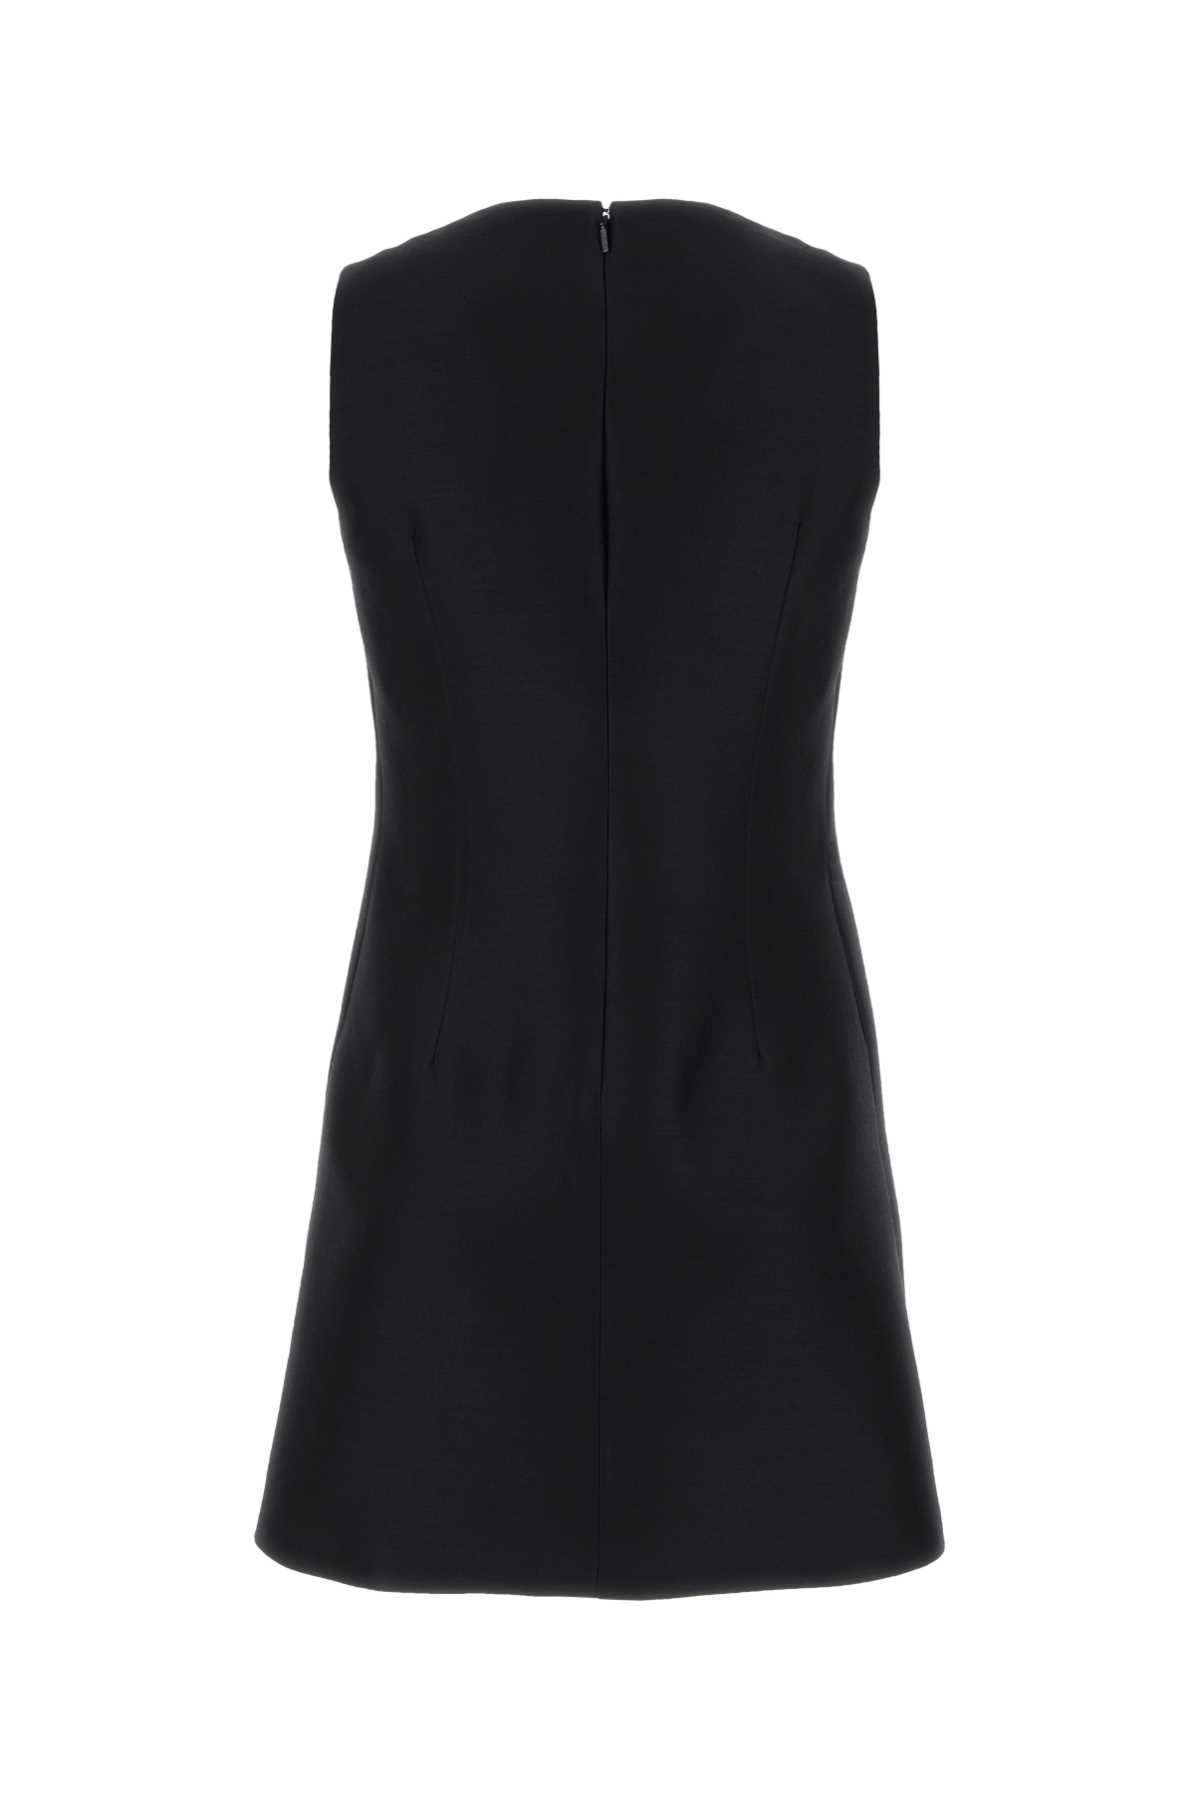 Versace Black Twill Mini Dress